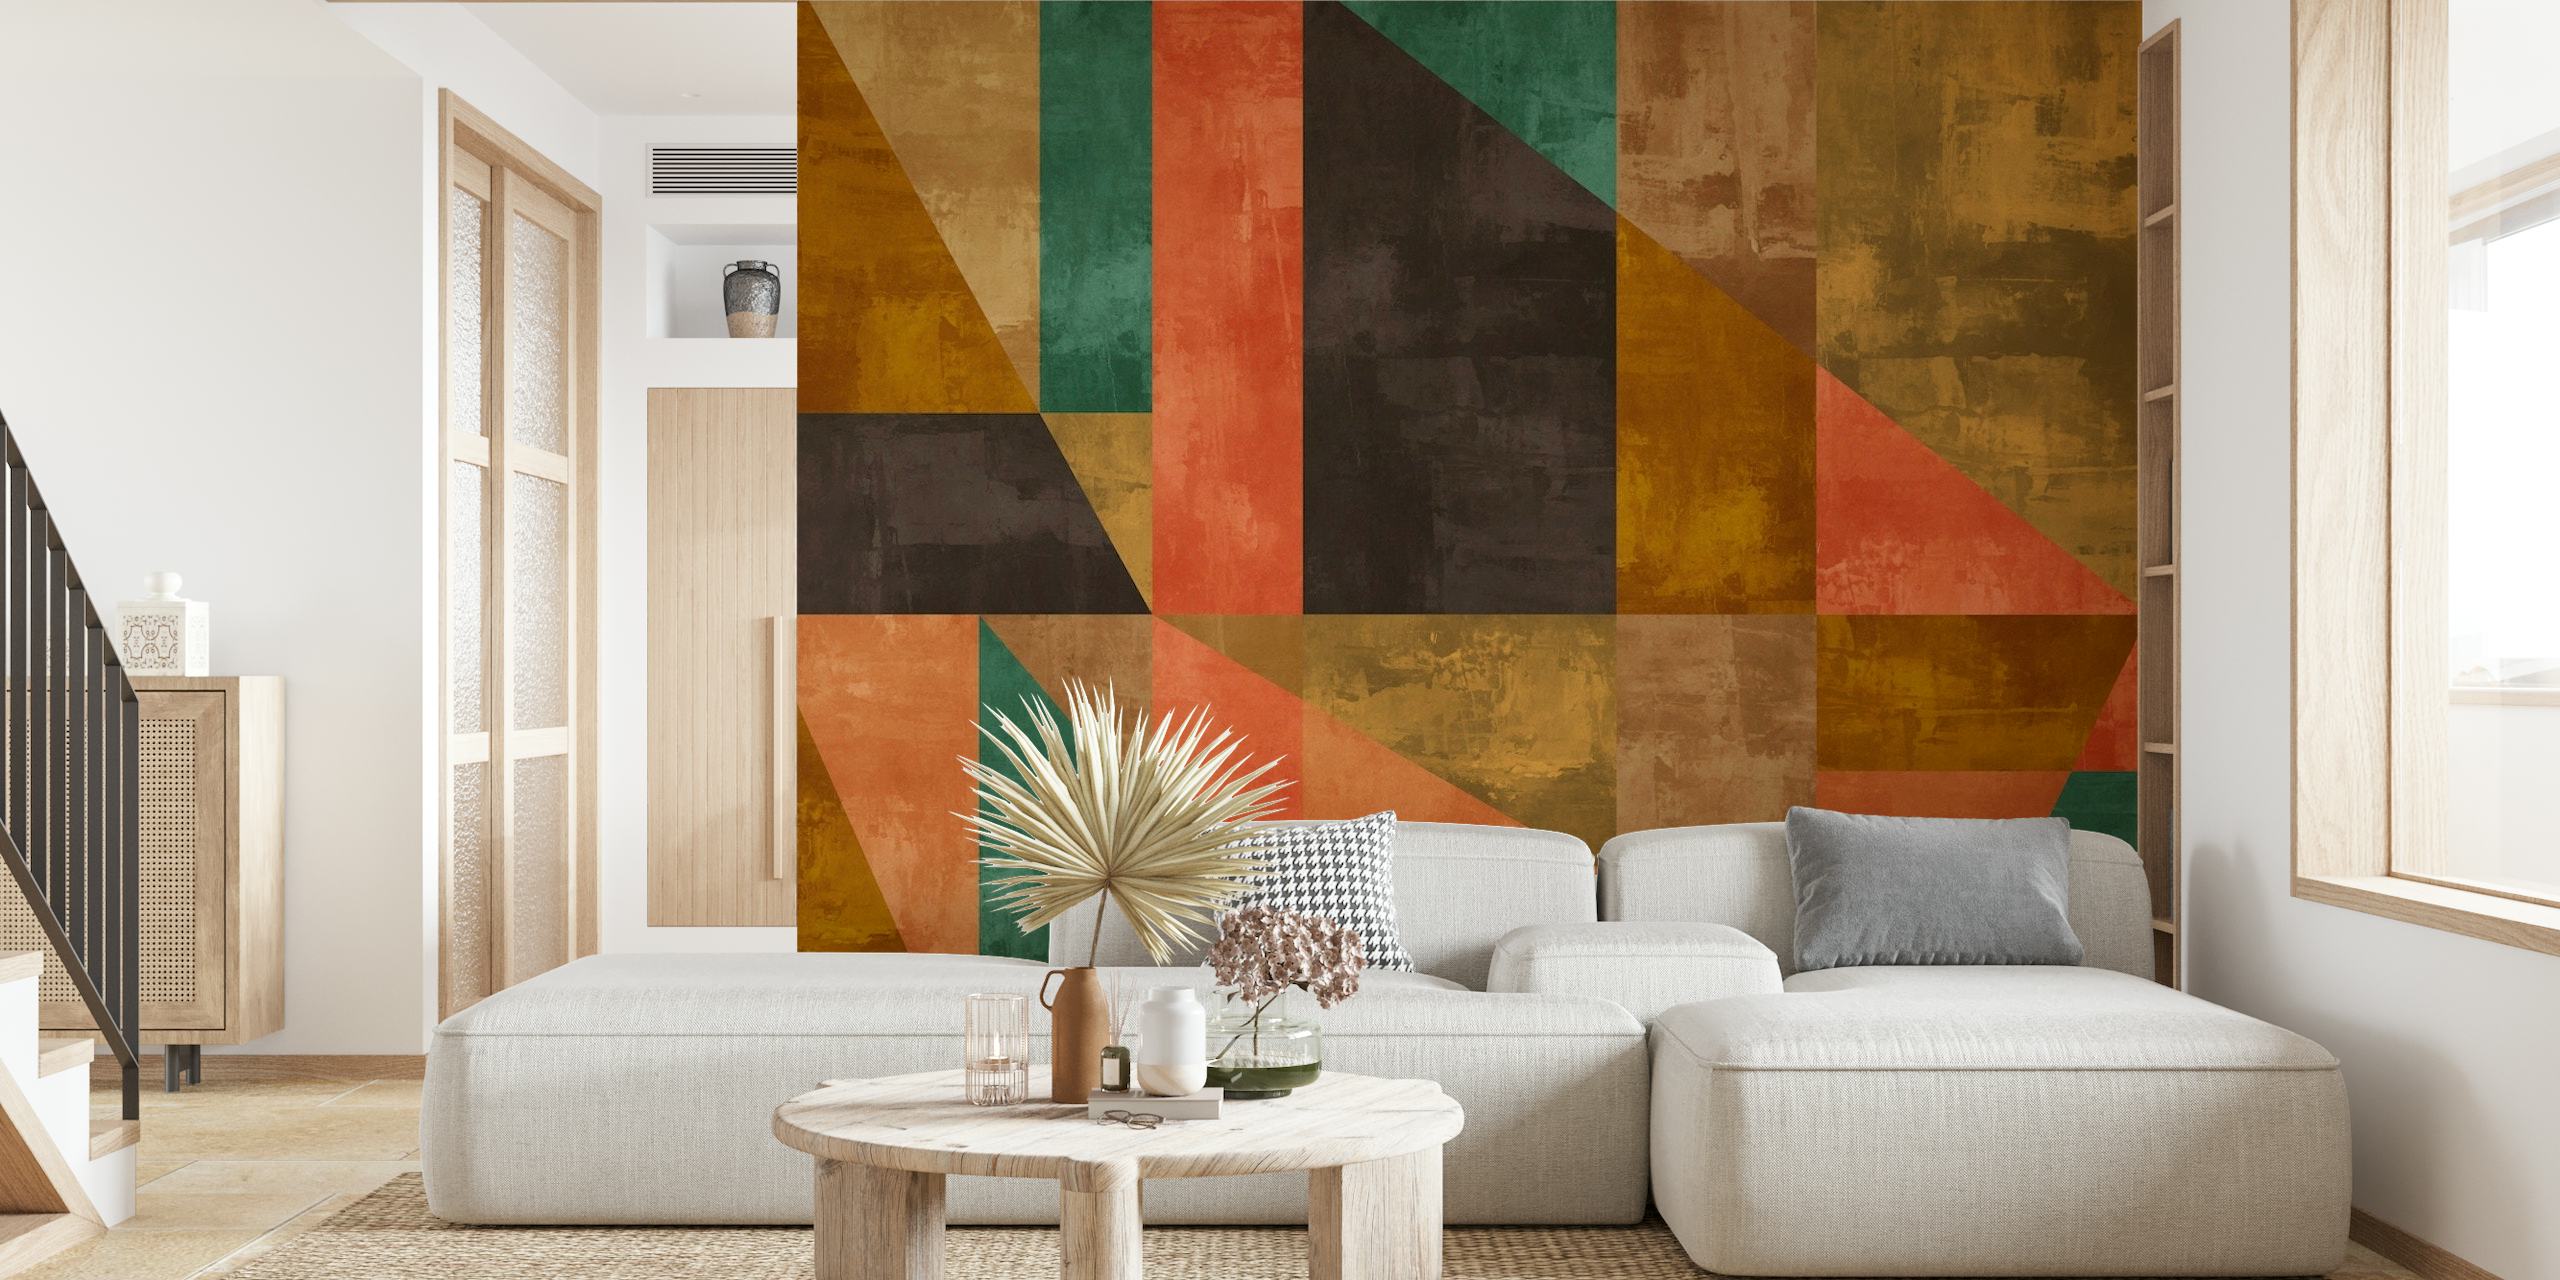 Peinture murale abstraite de peinture rustique présentant des formes géométriques dans des tons terreux et des ambres chauds